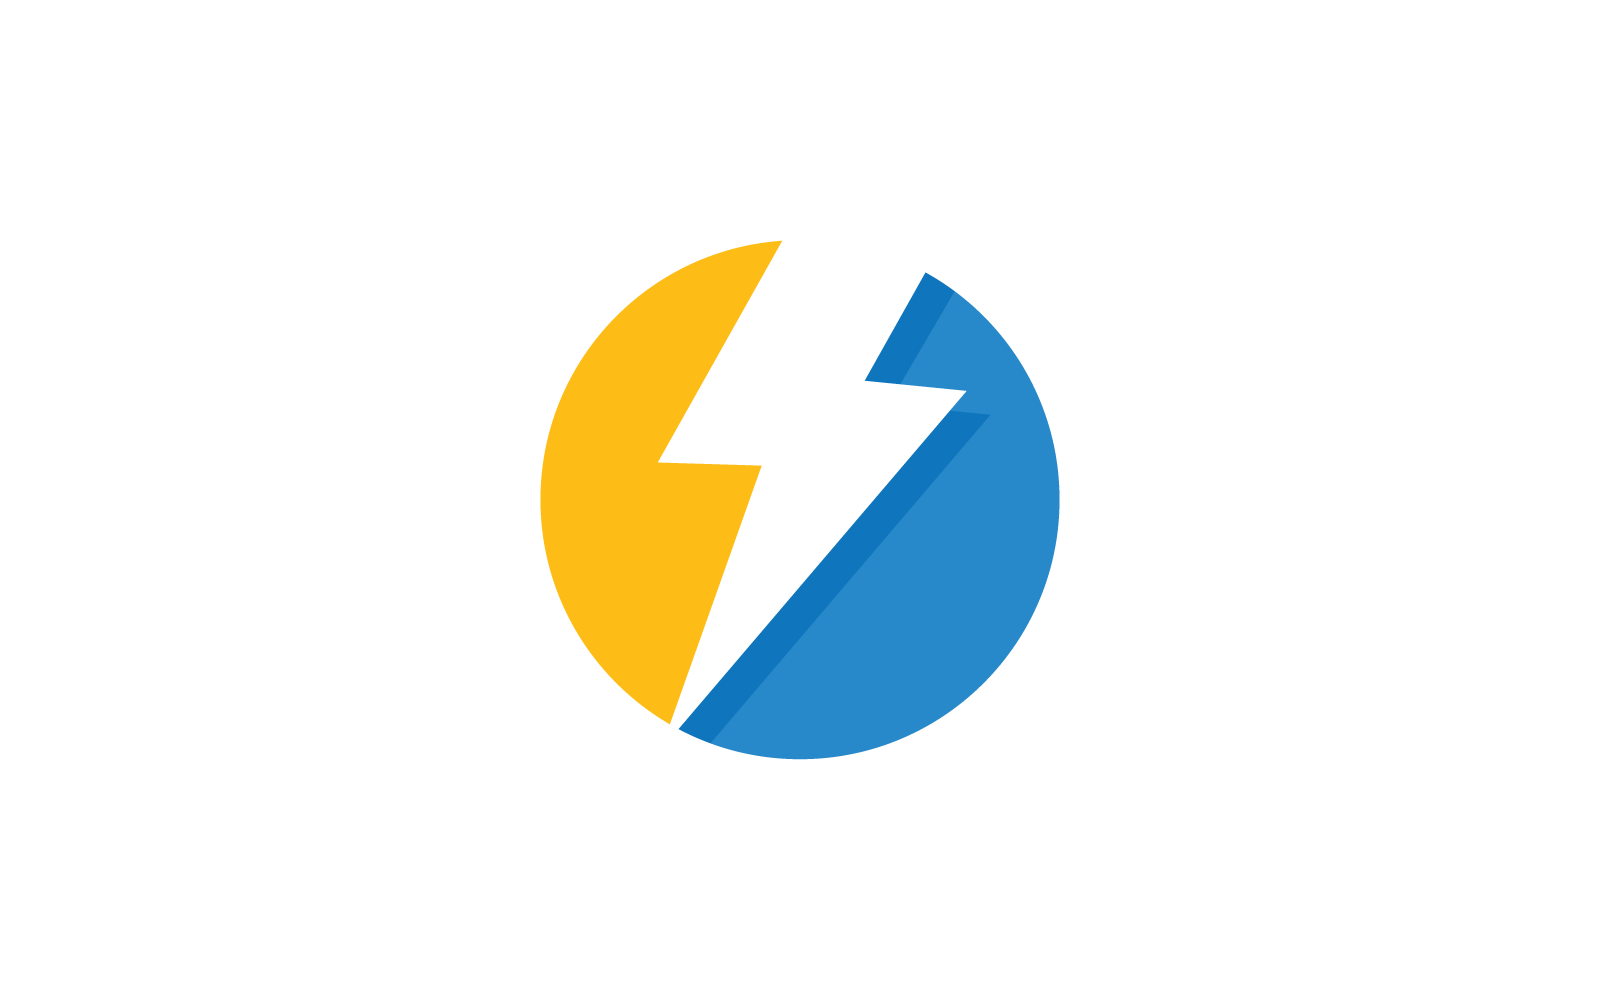 Power lightning power energy vector logo template Logo Template